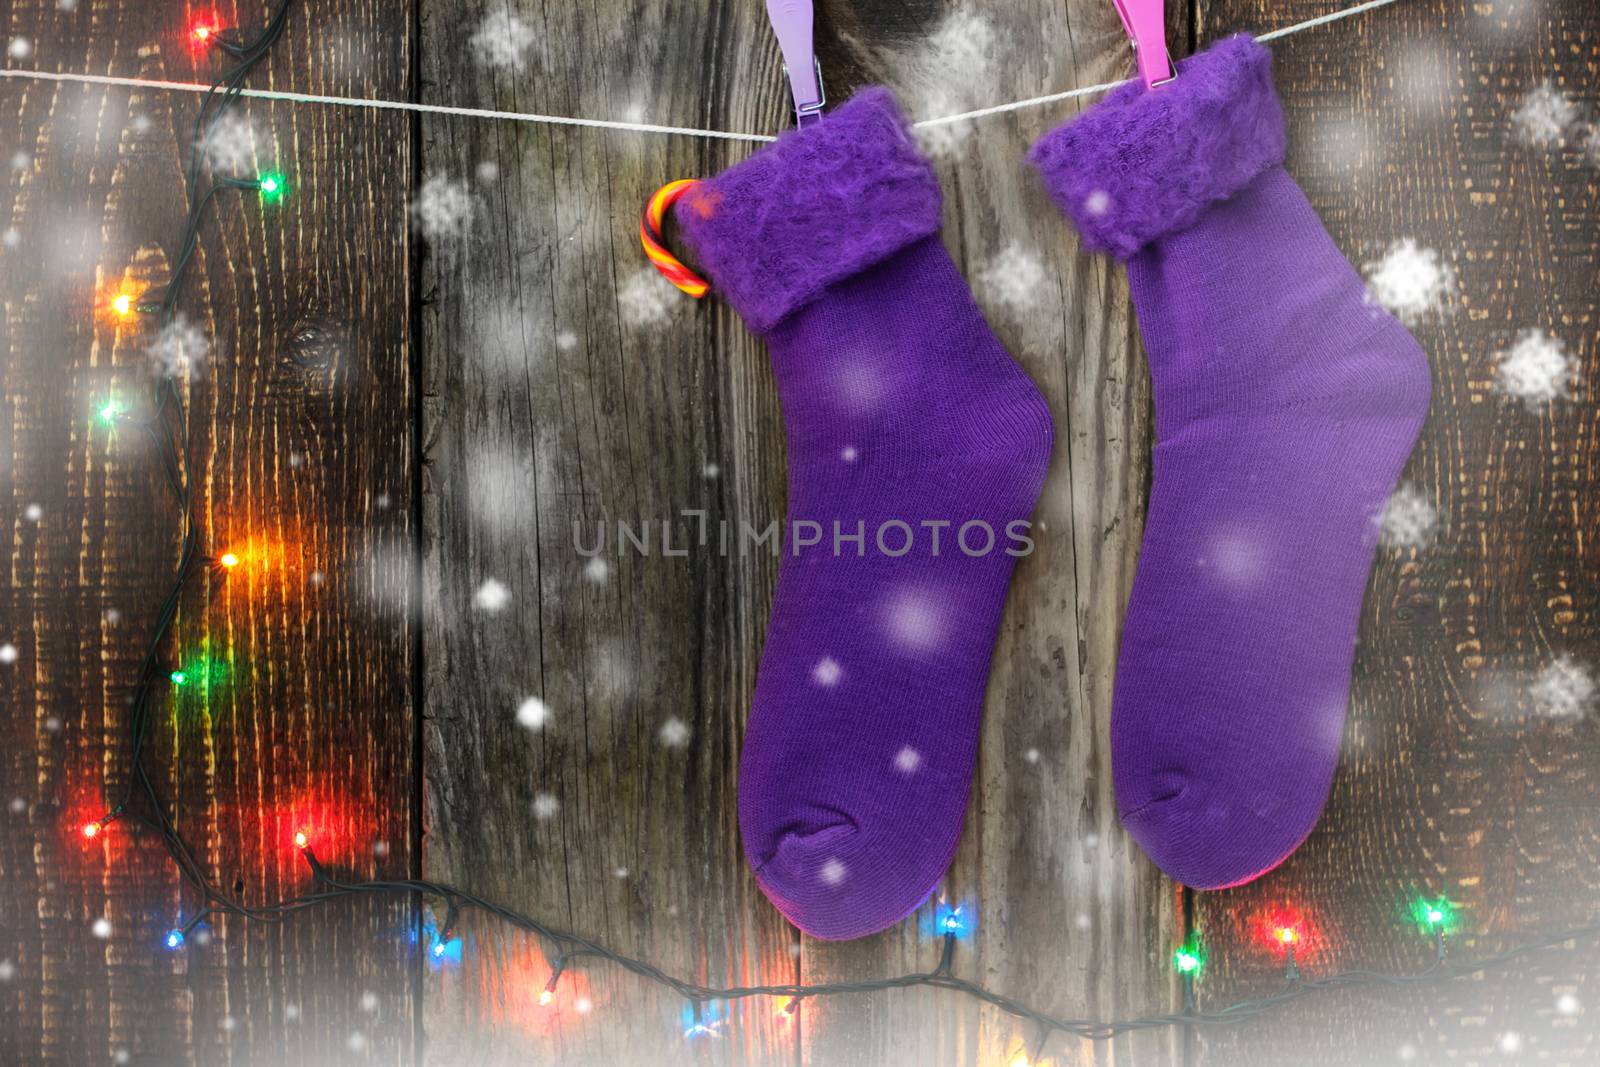 Christmas socks on the clothespins by Deniskarpenkov